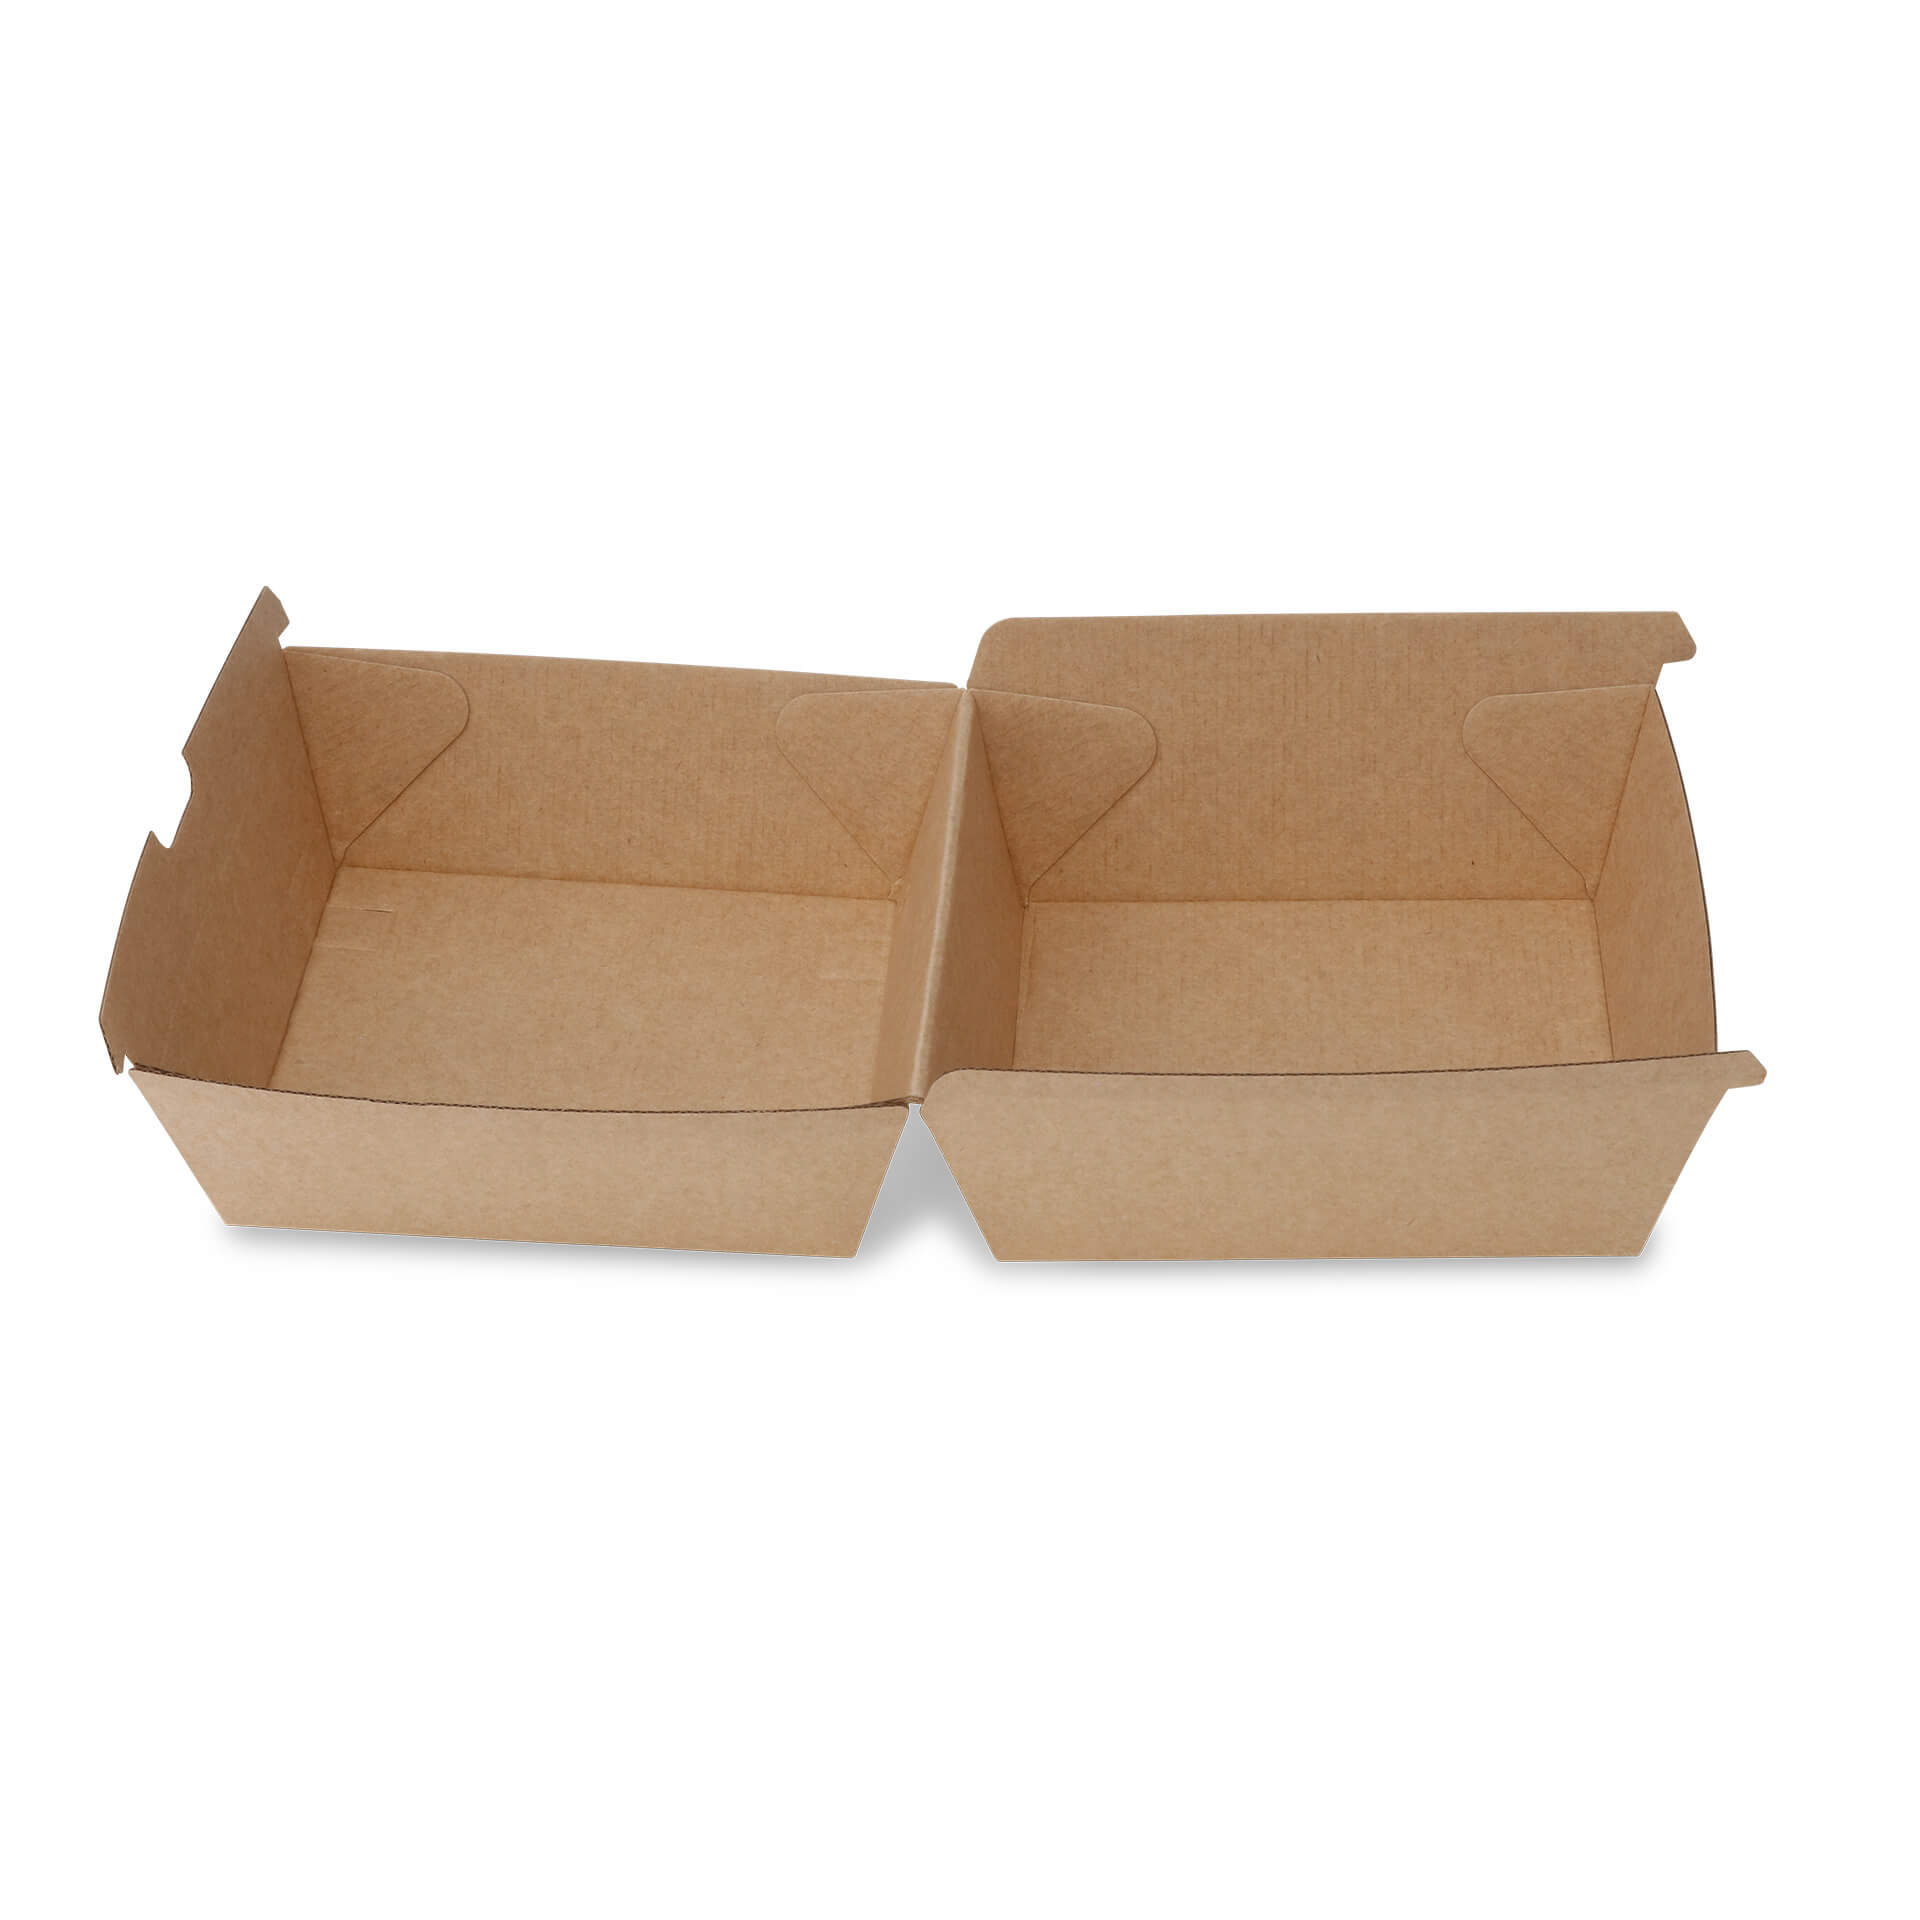 Take-away-Burger-Boxen 16,8 x 15,8 x 9,8 cm, Kraftkarton, braun